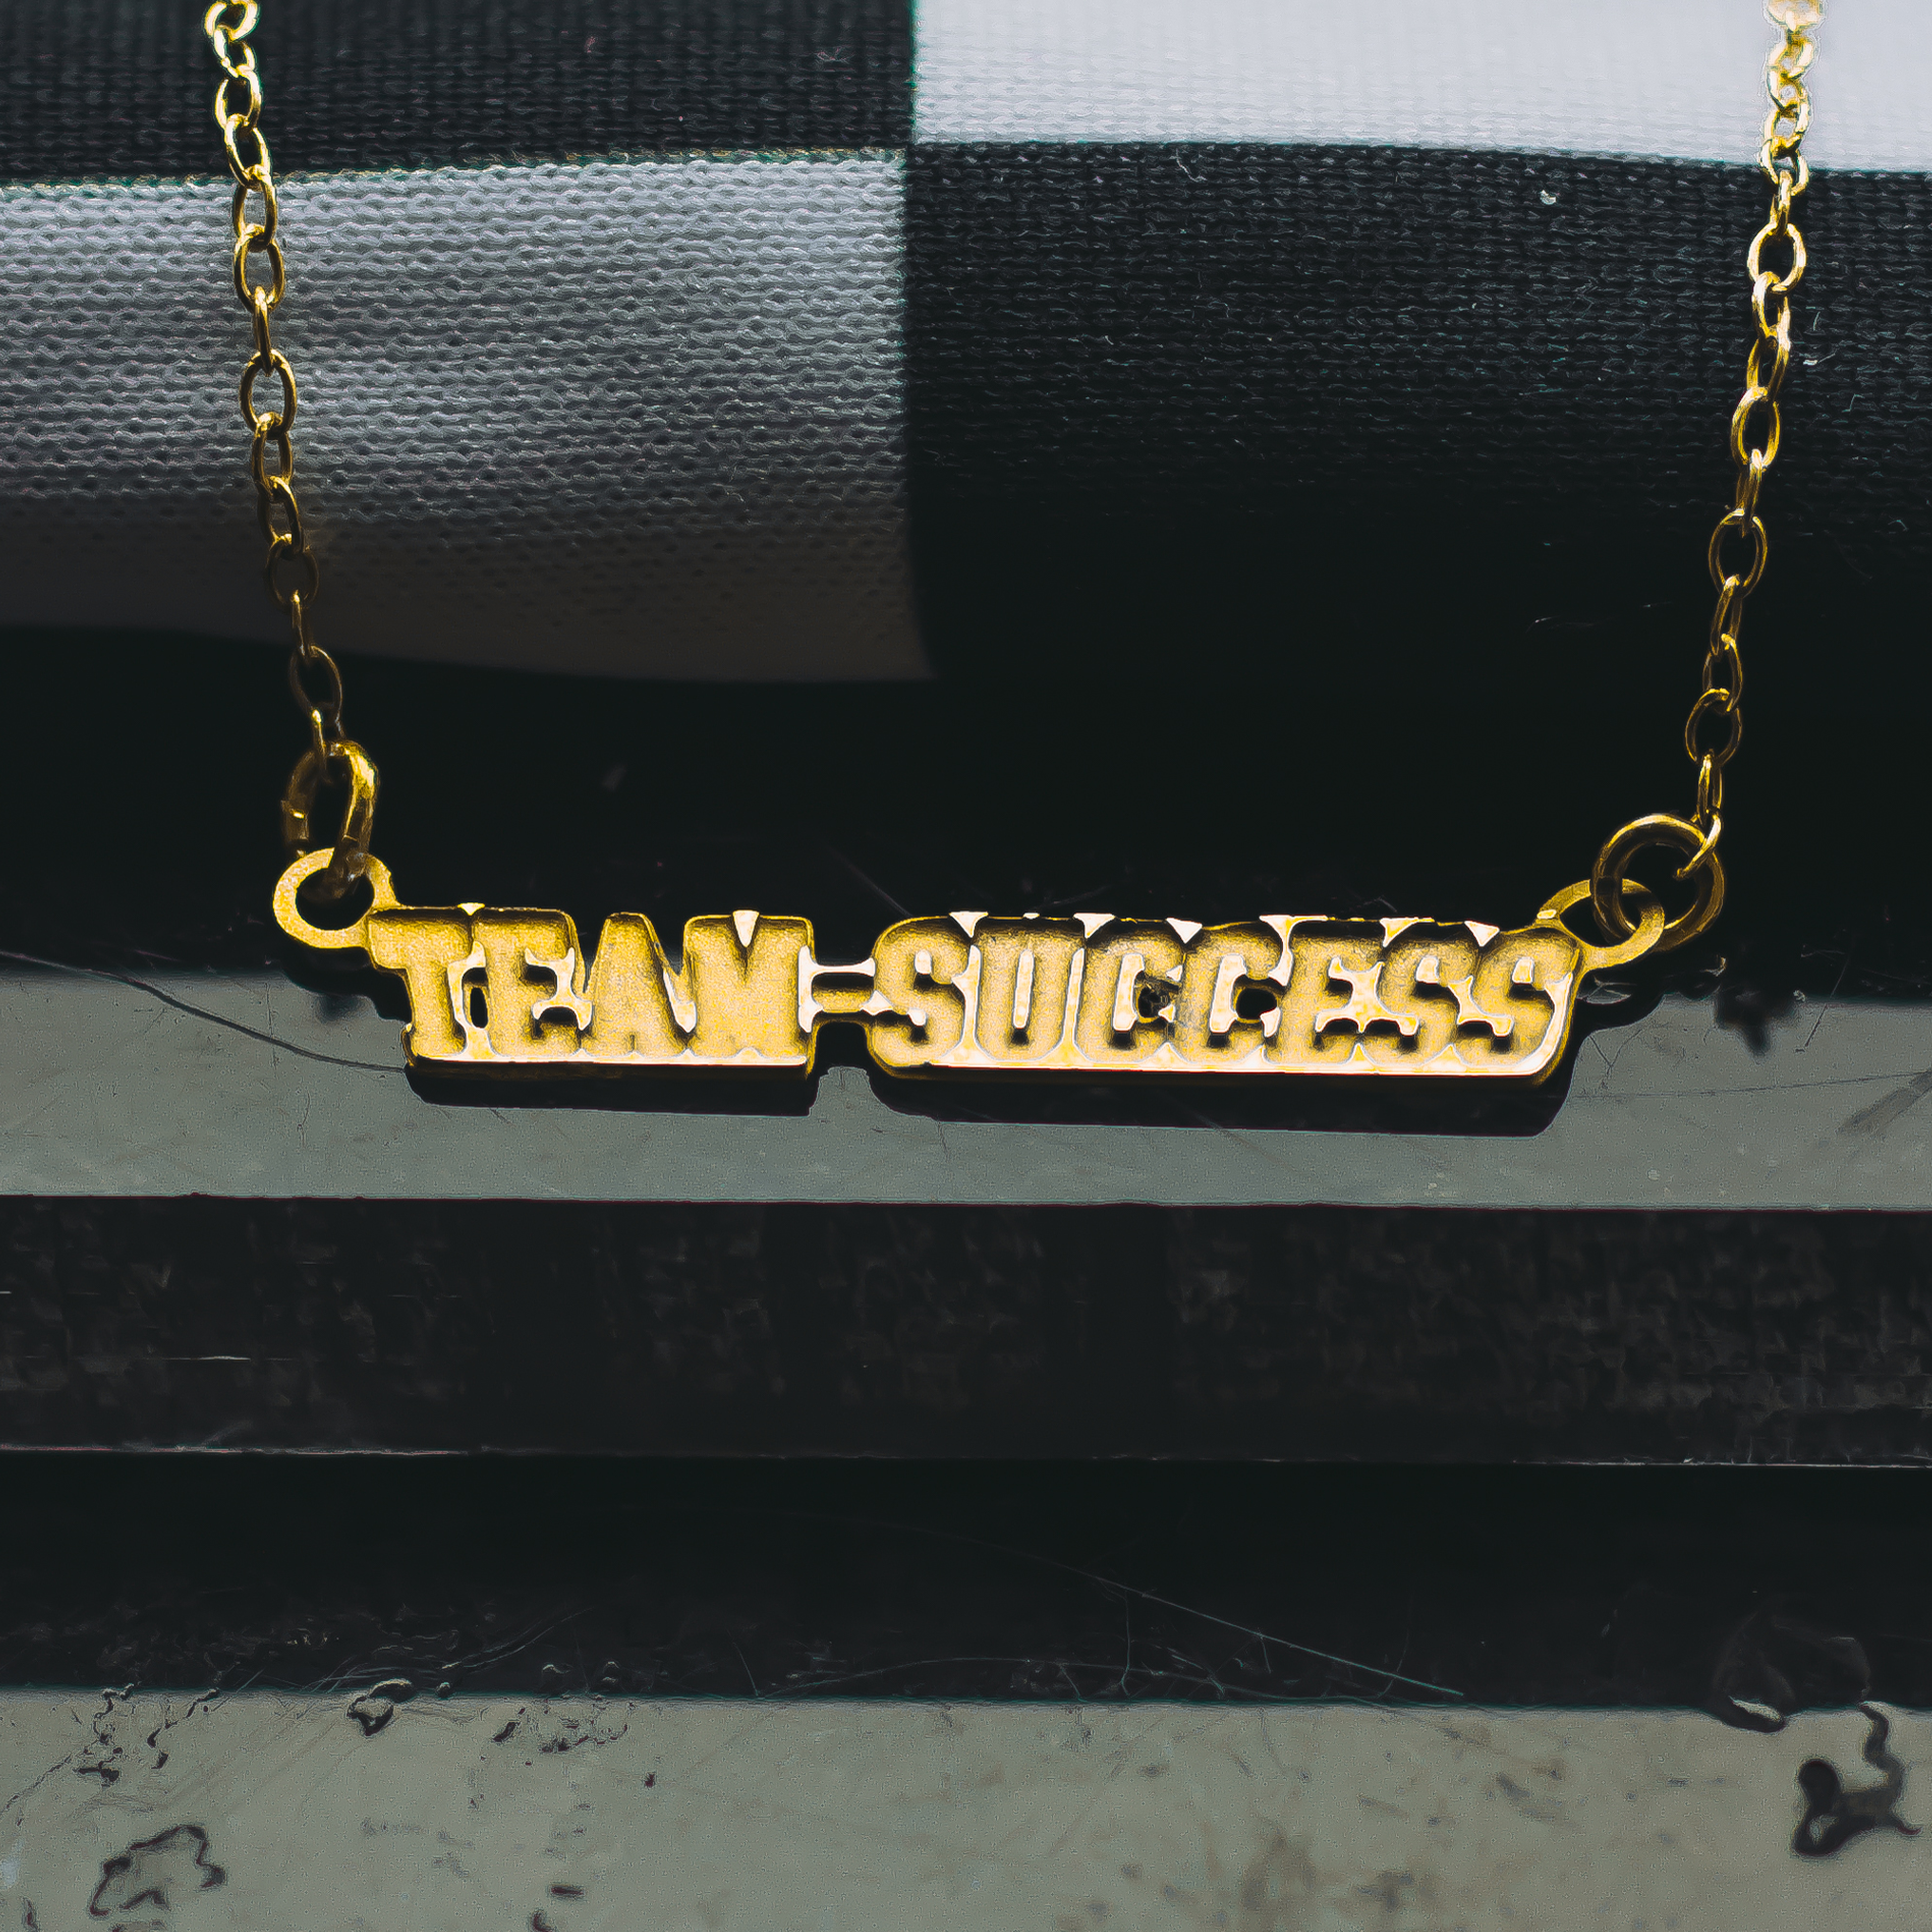 TEAM SUCCESS Letterman Necklace - Gold